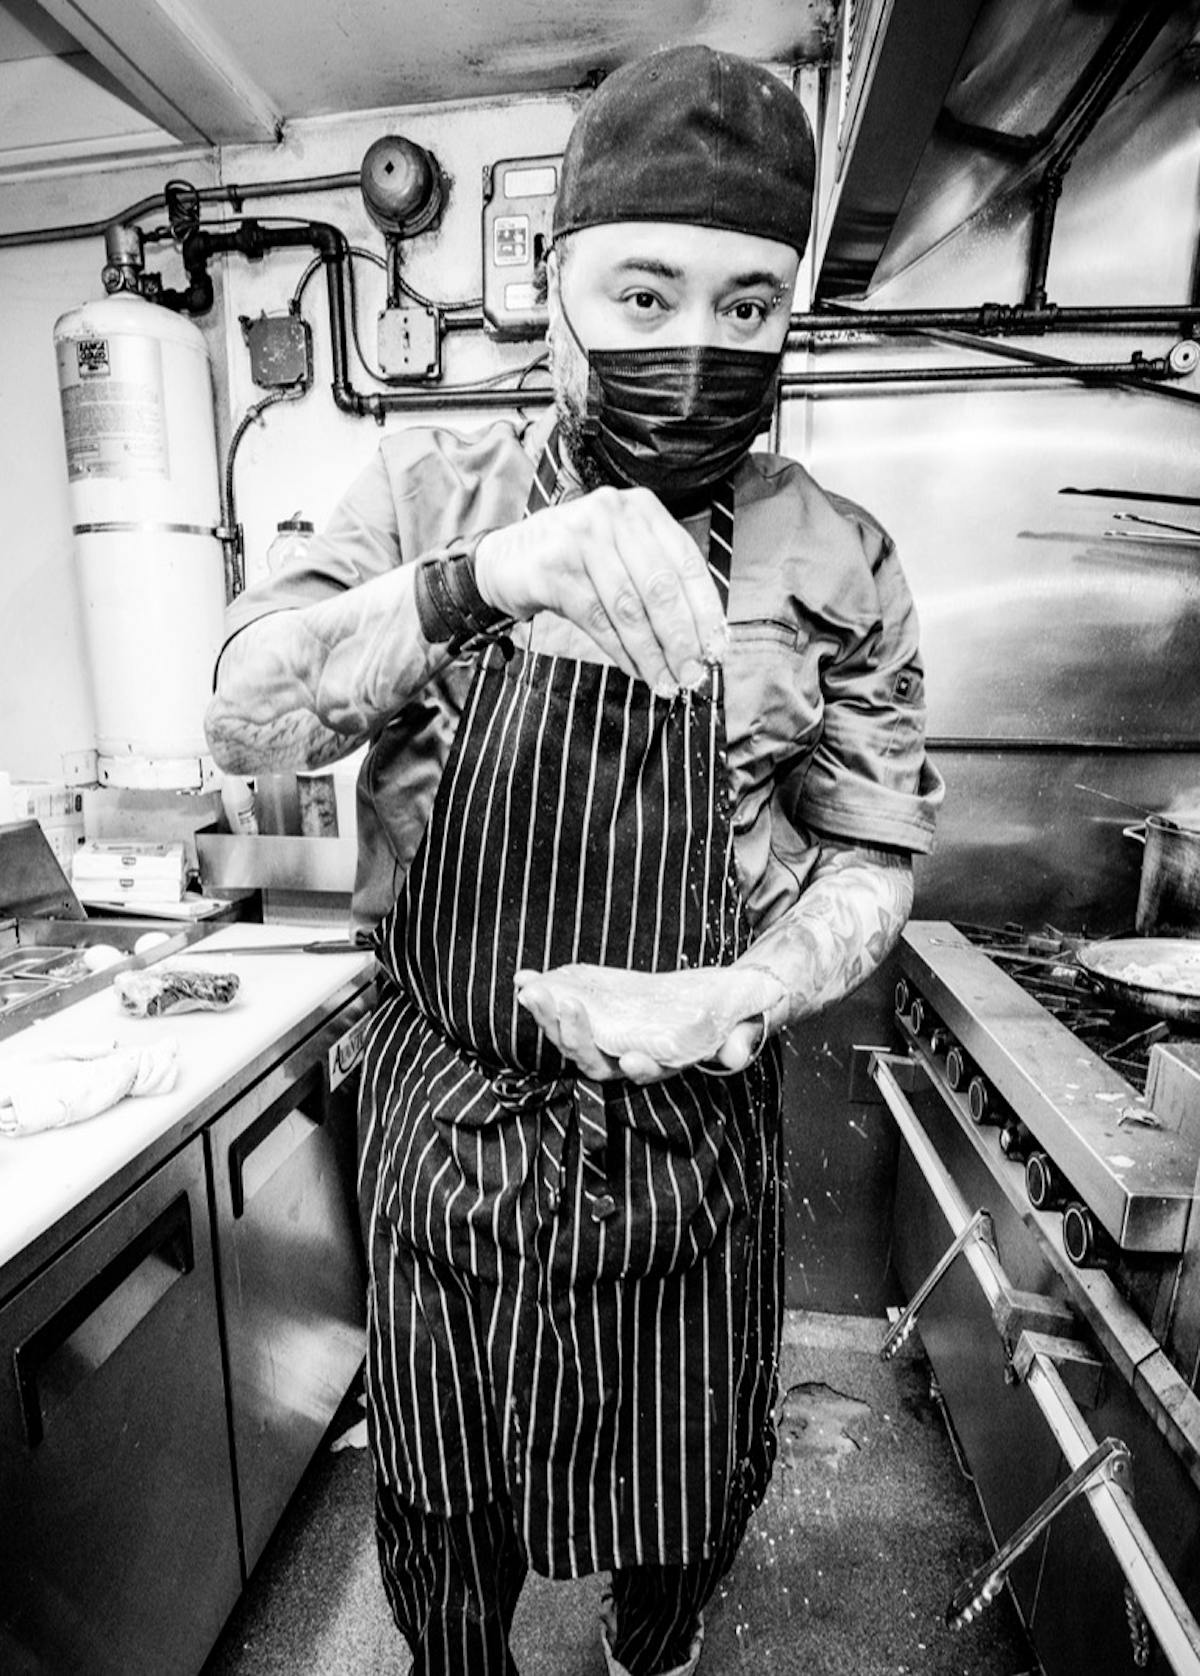 a chef in a striped apron